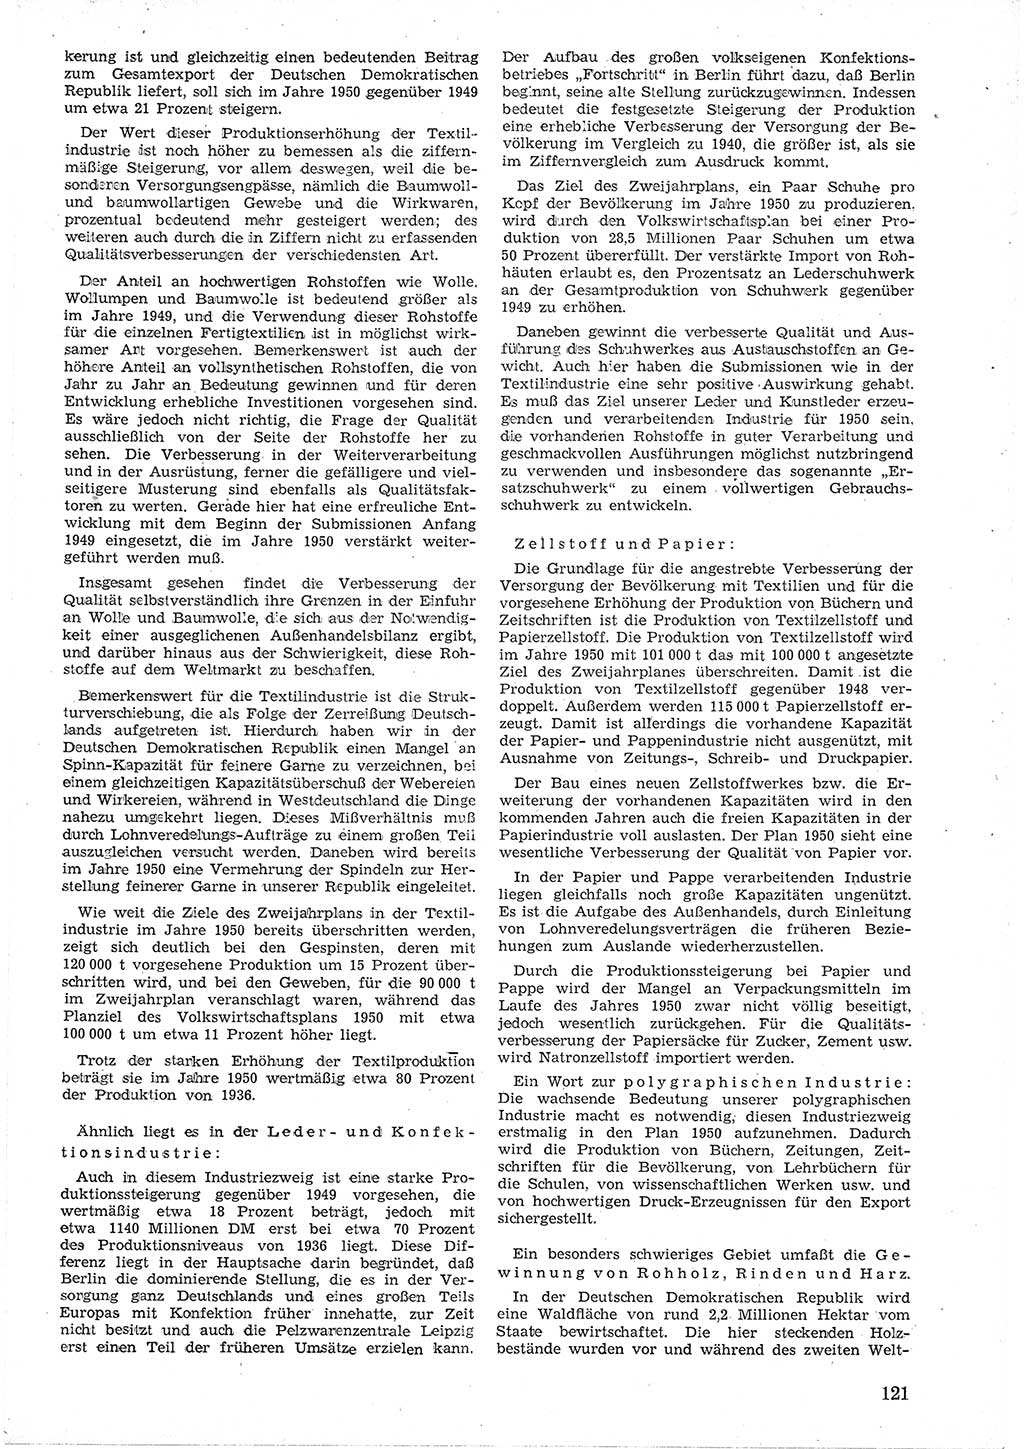 Provisorische Volkskammer (VK) der Deutschen Demokratischen Republik (DDR) 1949-1950, Dokument 133 (Prov. VK DDR 1949-1950, Dok. 133)